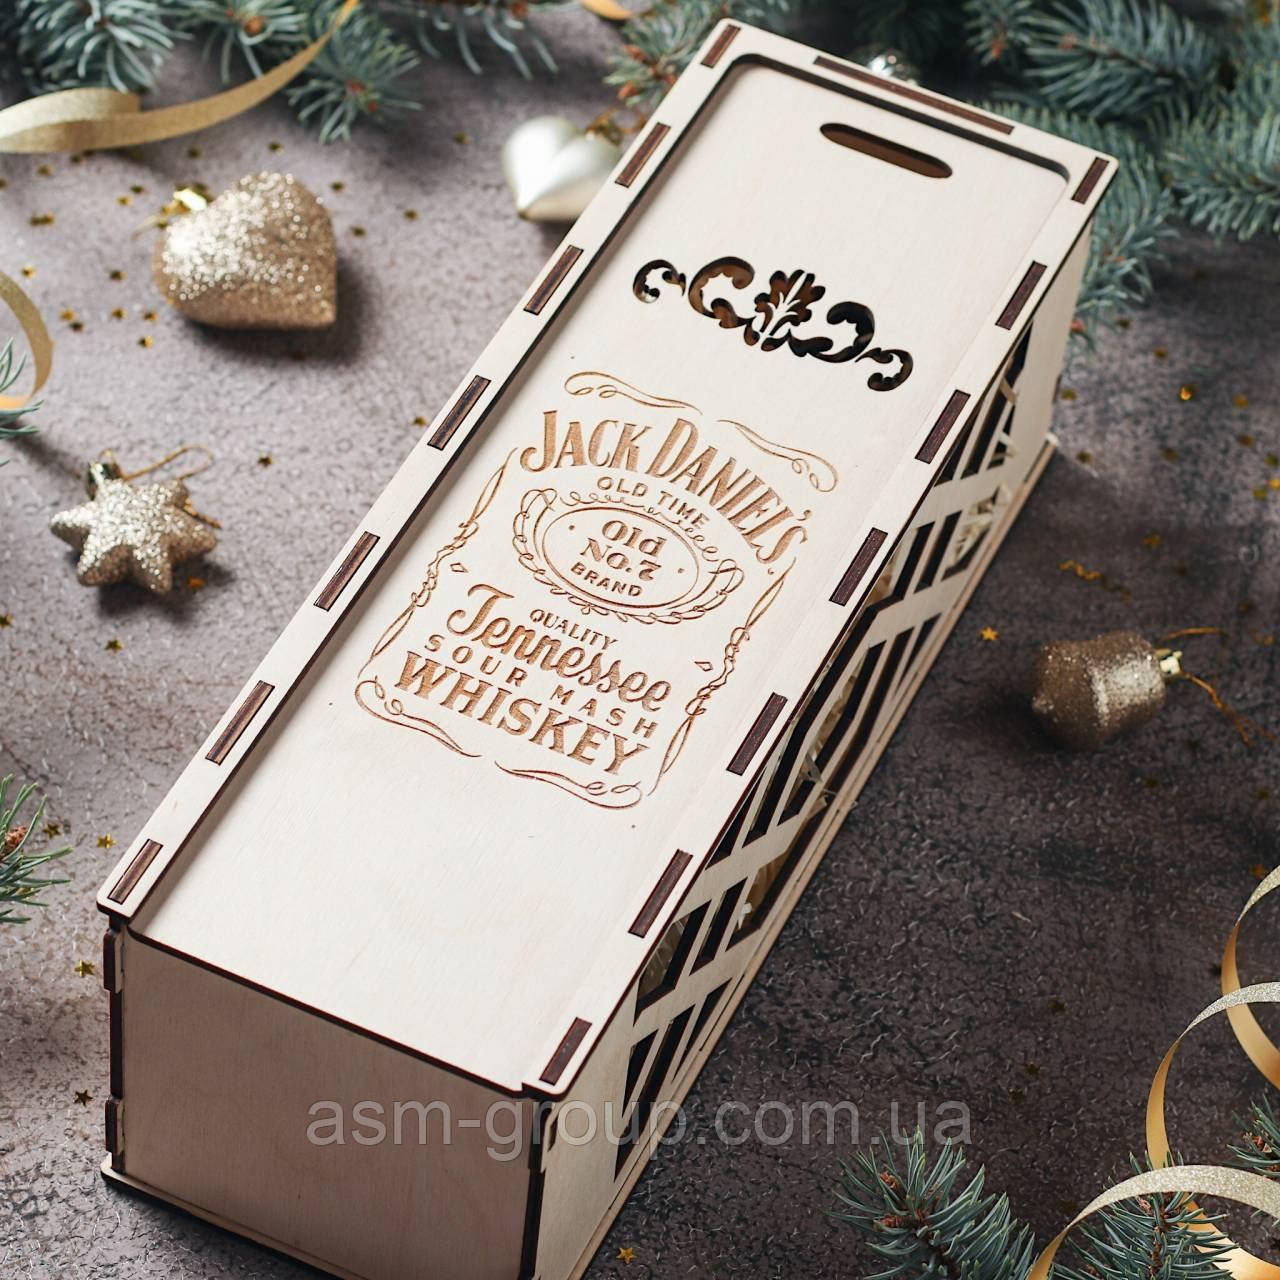 Дерев'яна коробка для паковання. Подарункова коробка для пляшки. Дизайн Джек Деніелс